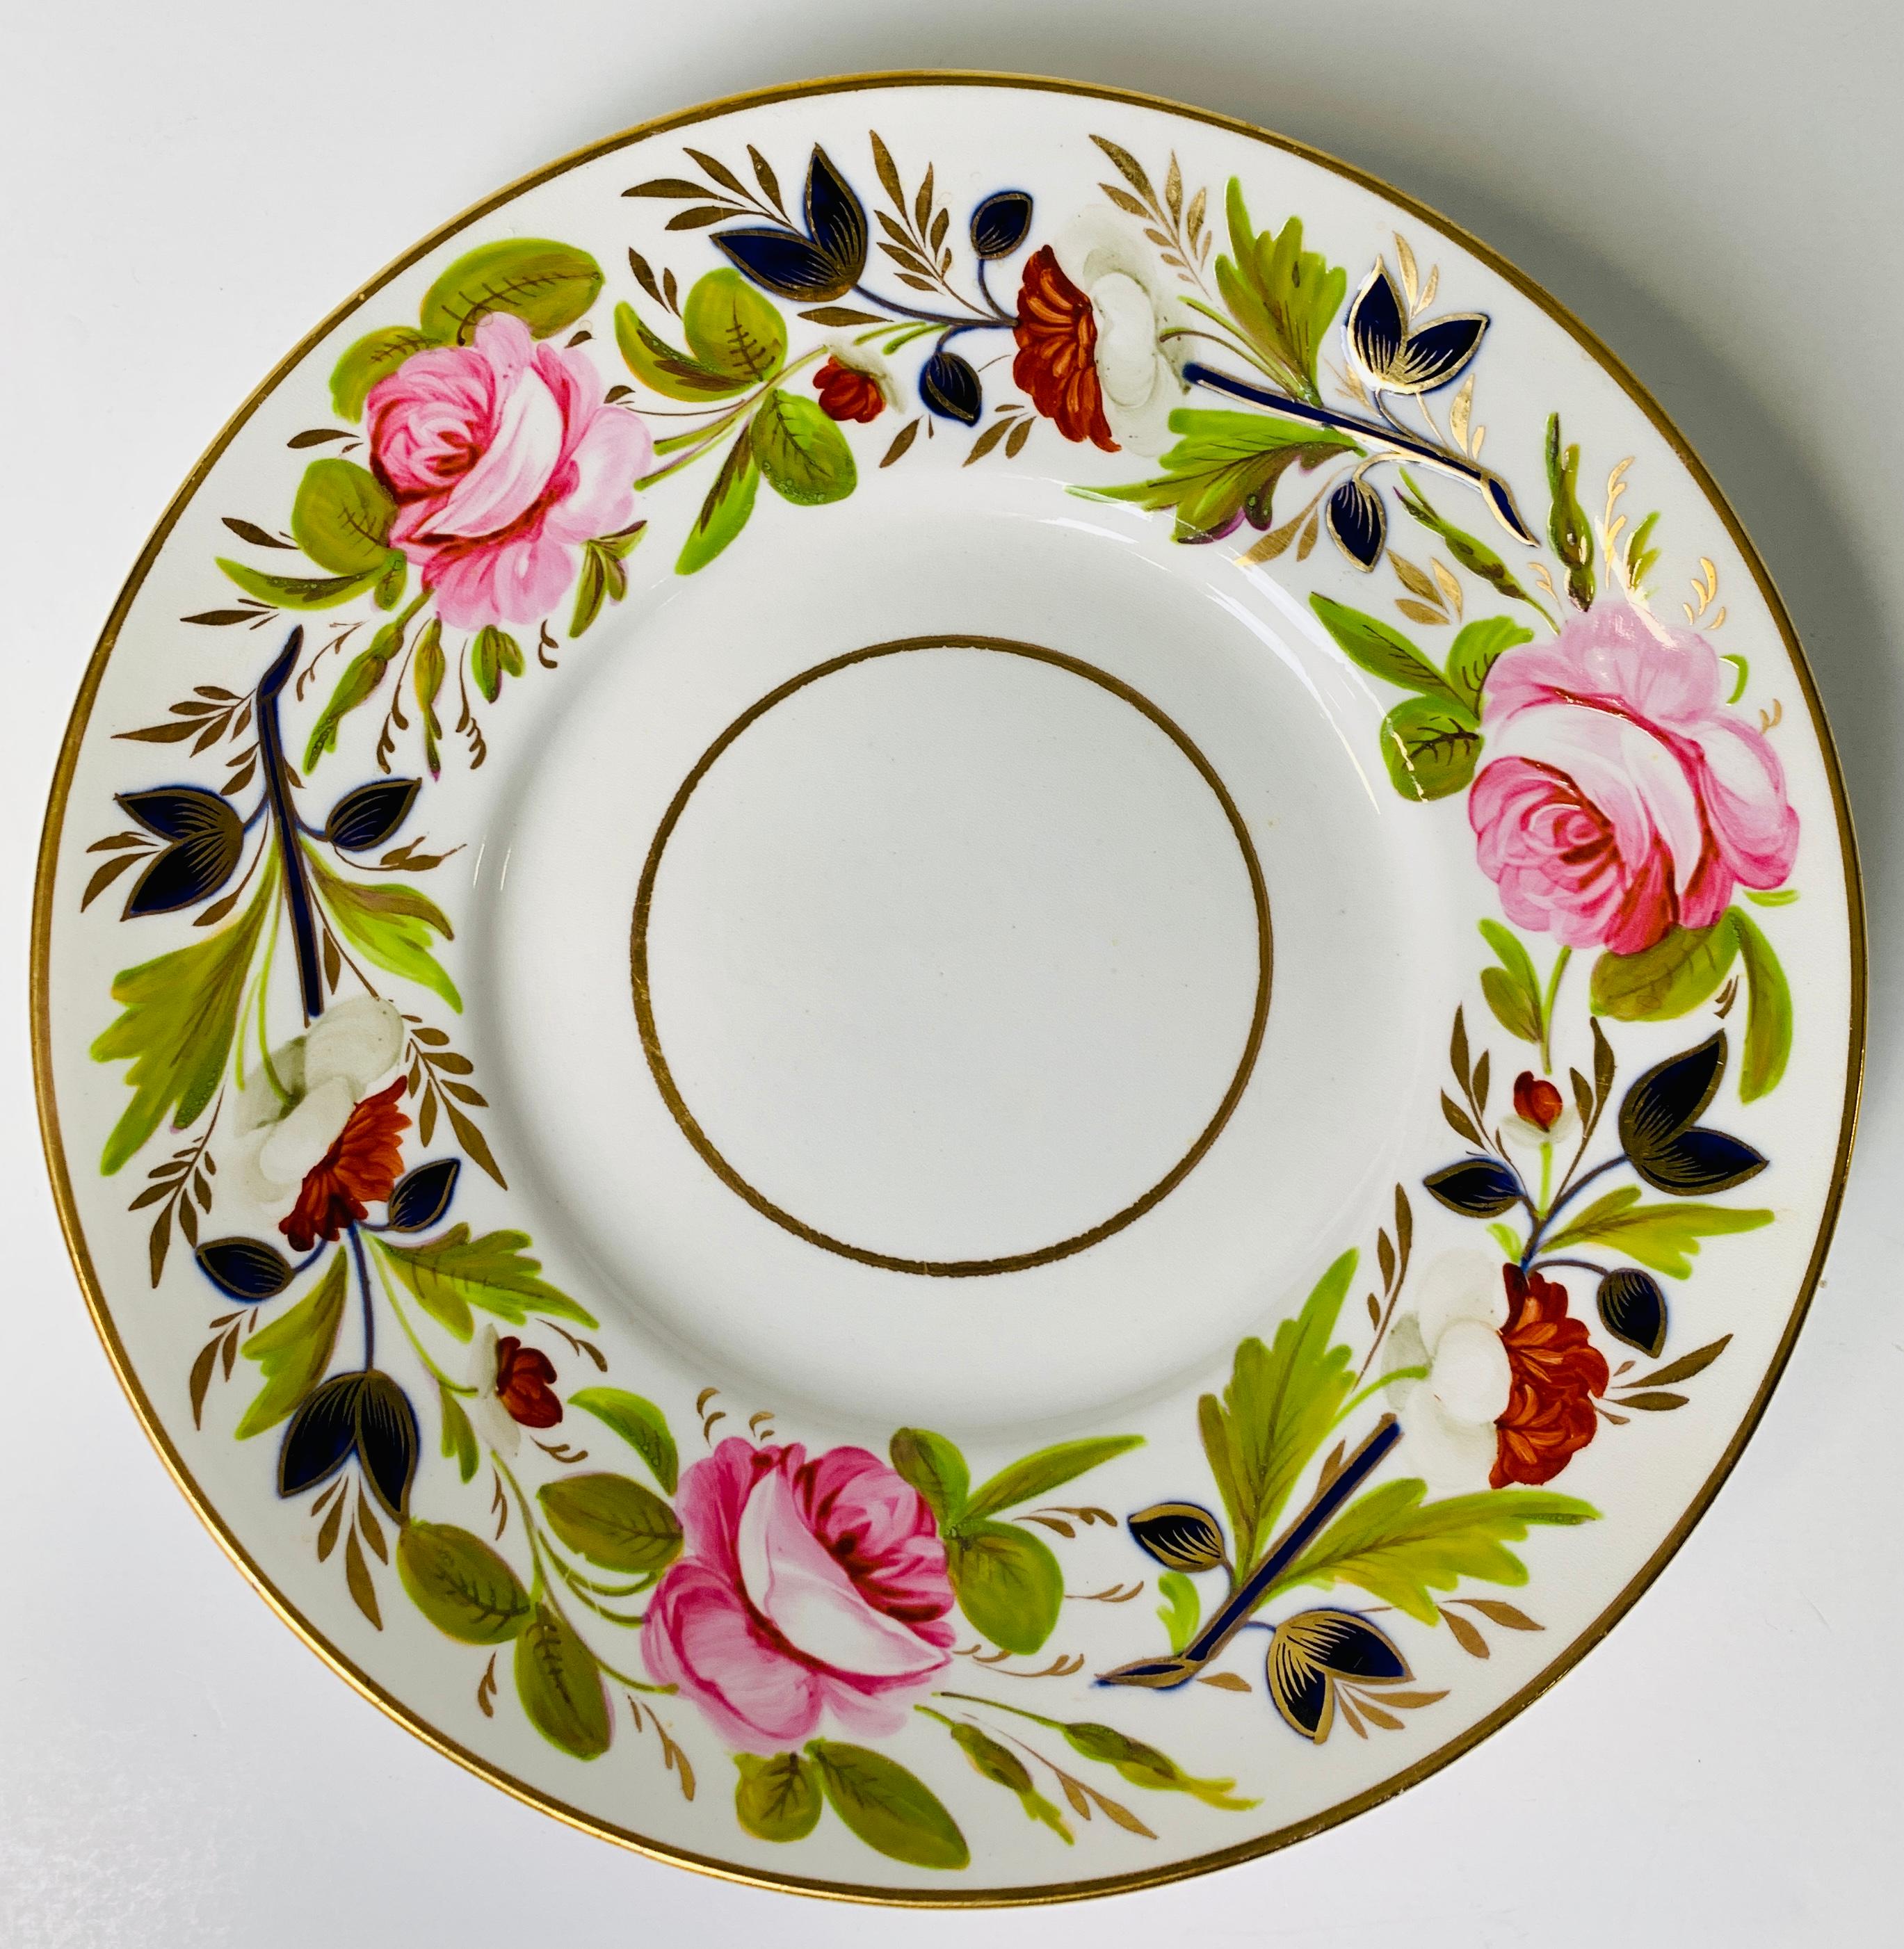 Une paire de plats anciens en porcelaine anglaise peints à la main de belles pivoines roses et d'autres fleurs a été fabriquée en Angleterre vers 1830.
Placée près de la porte d'entrée, cette jolie paire de plats vous permettra, ainsi qu'à toute